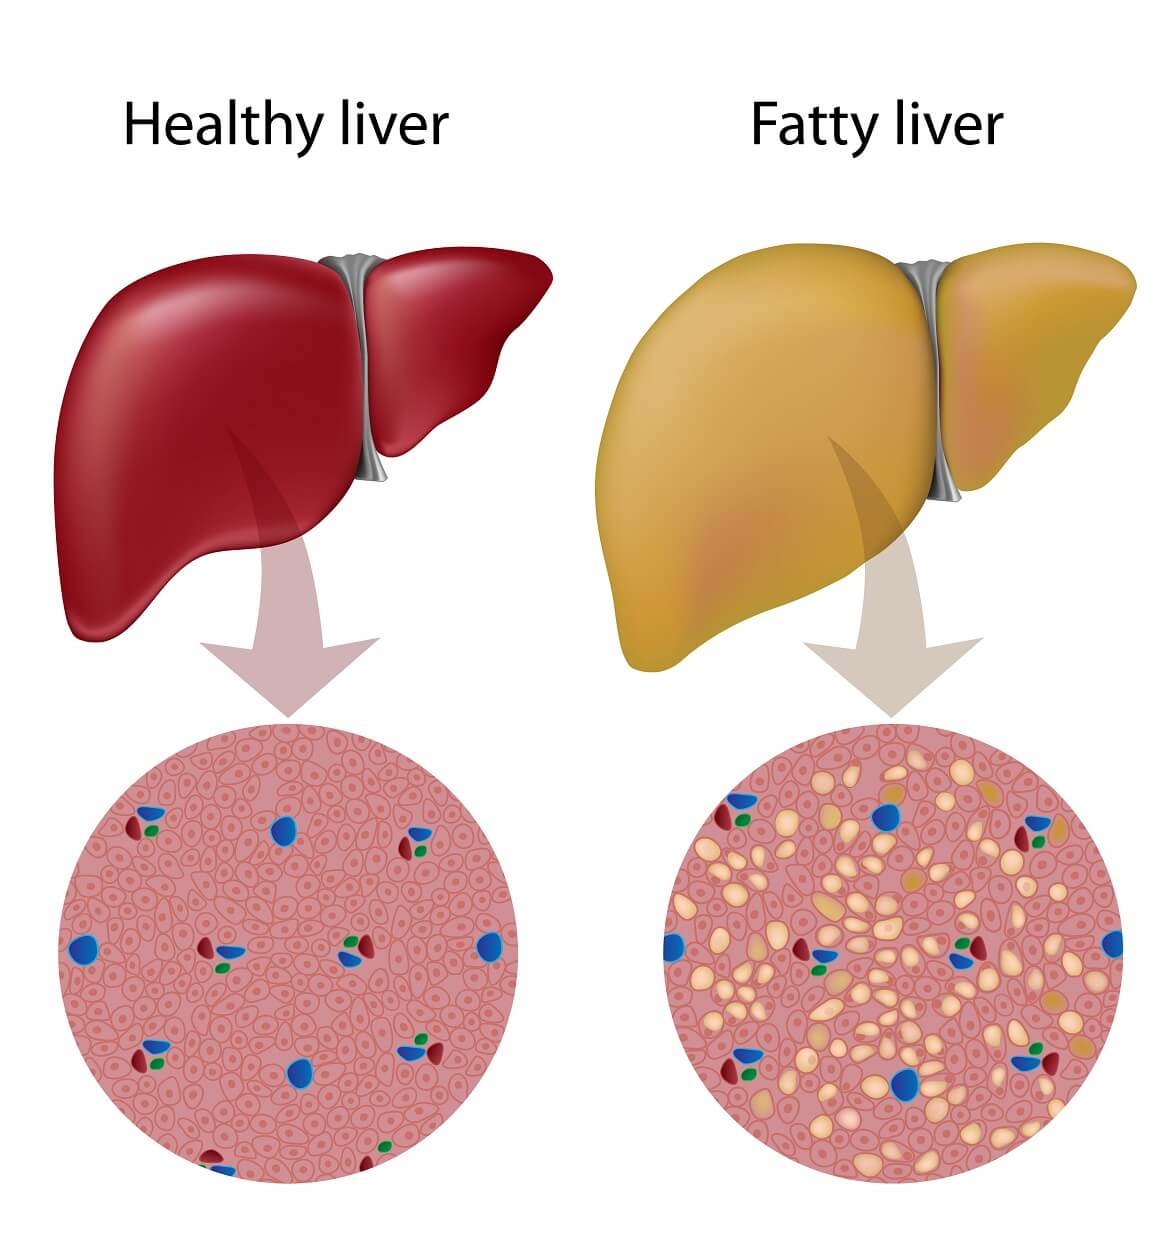 Alkoholna masna bolest jetre javlja se kada dođe do abnormalnog nakupljanja masti u jetri zbog prekomjerne konzumacije alkohola tijekom duljeg vremenskog razdoblja